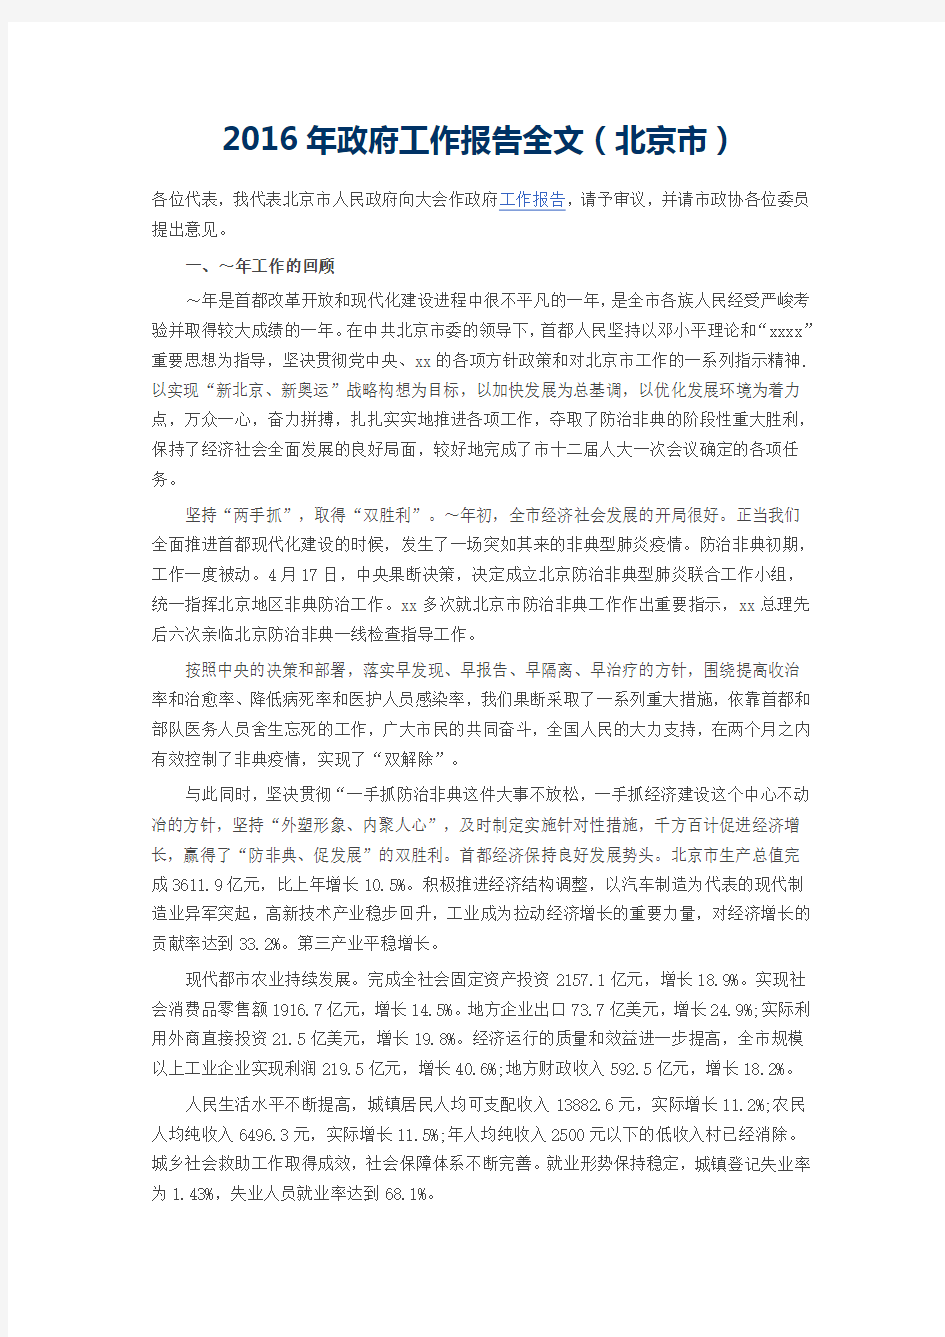 2016年北京市政府工作报告全文